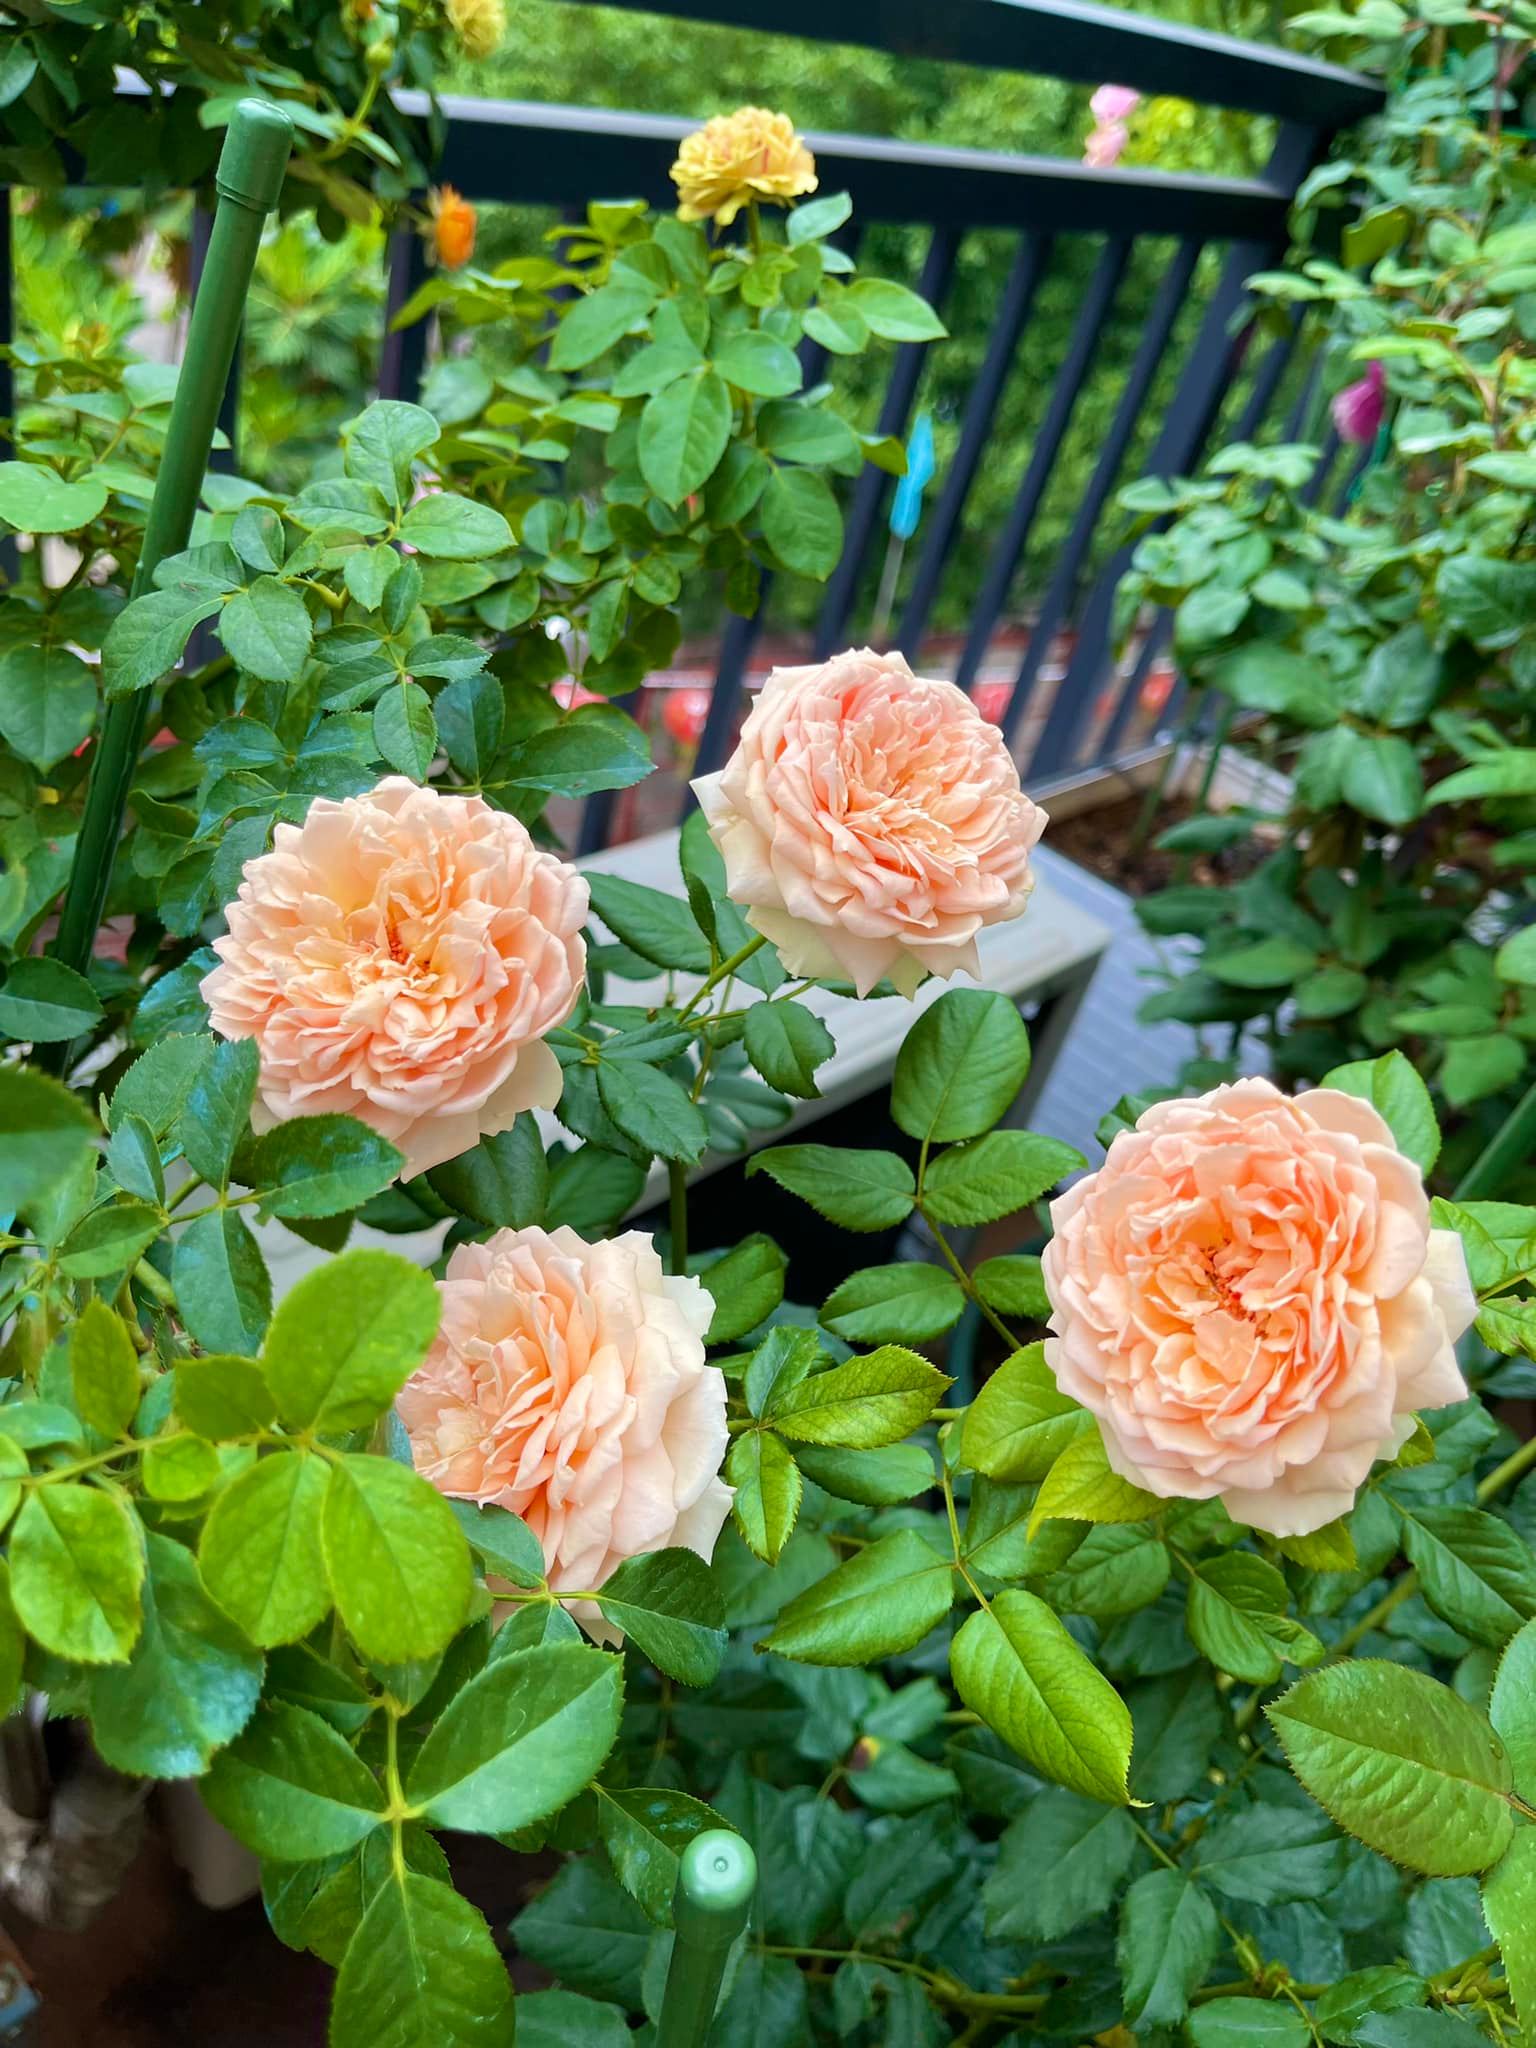 Khu vườn hoa hồng đẹp ngây ngất trên sân thượng ở TP HCM - Ảnh 12.